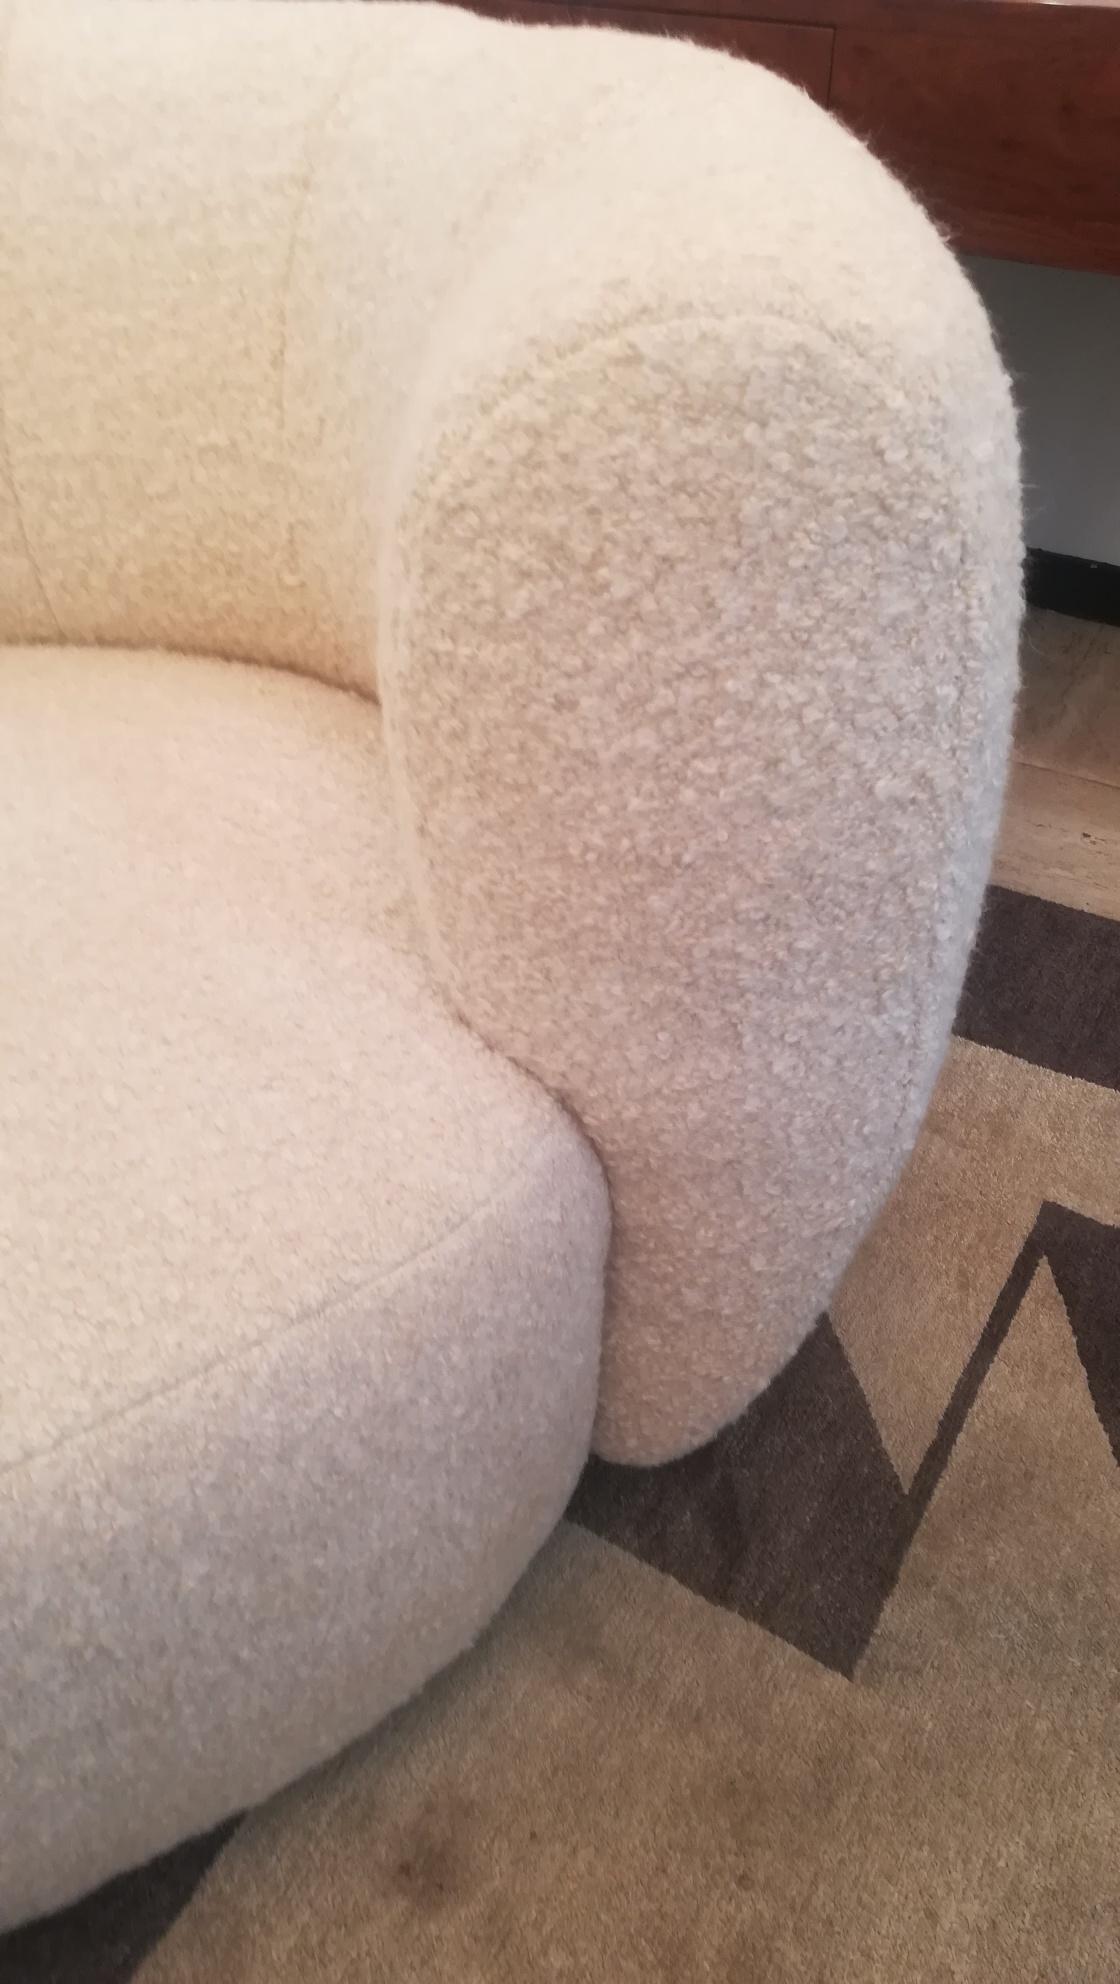 beige curved sofa